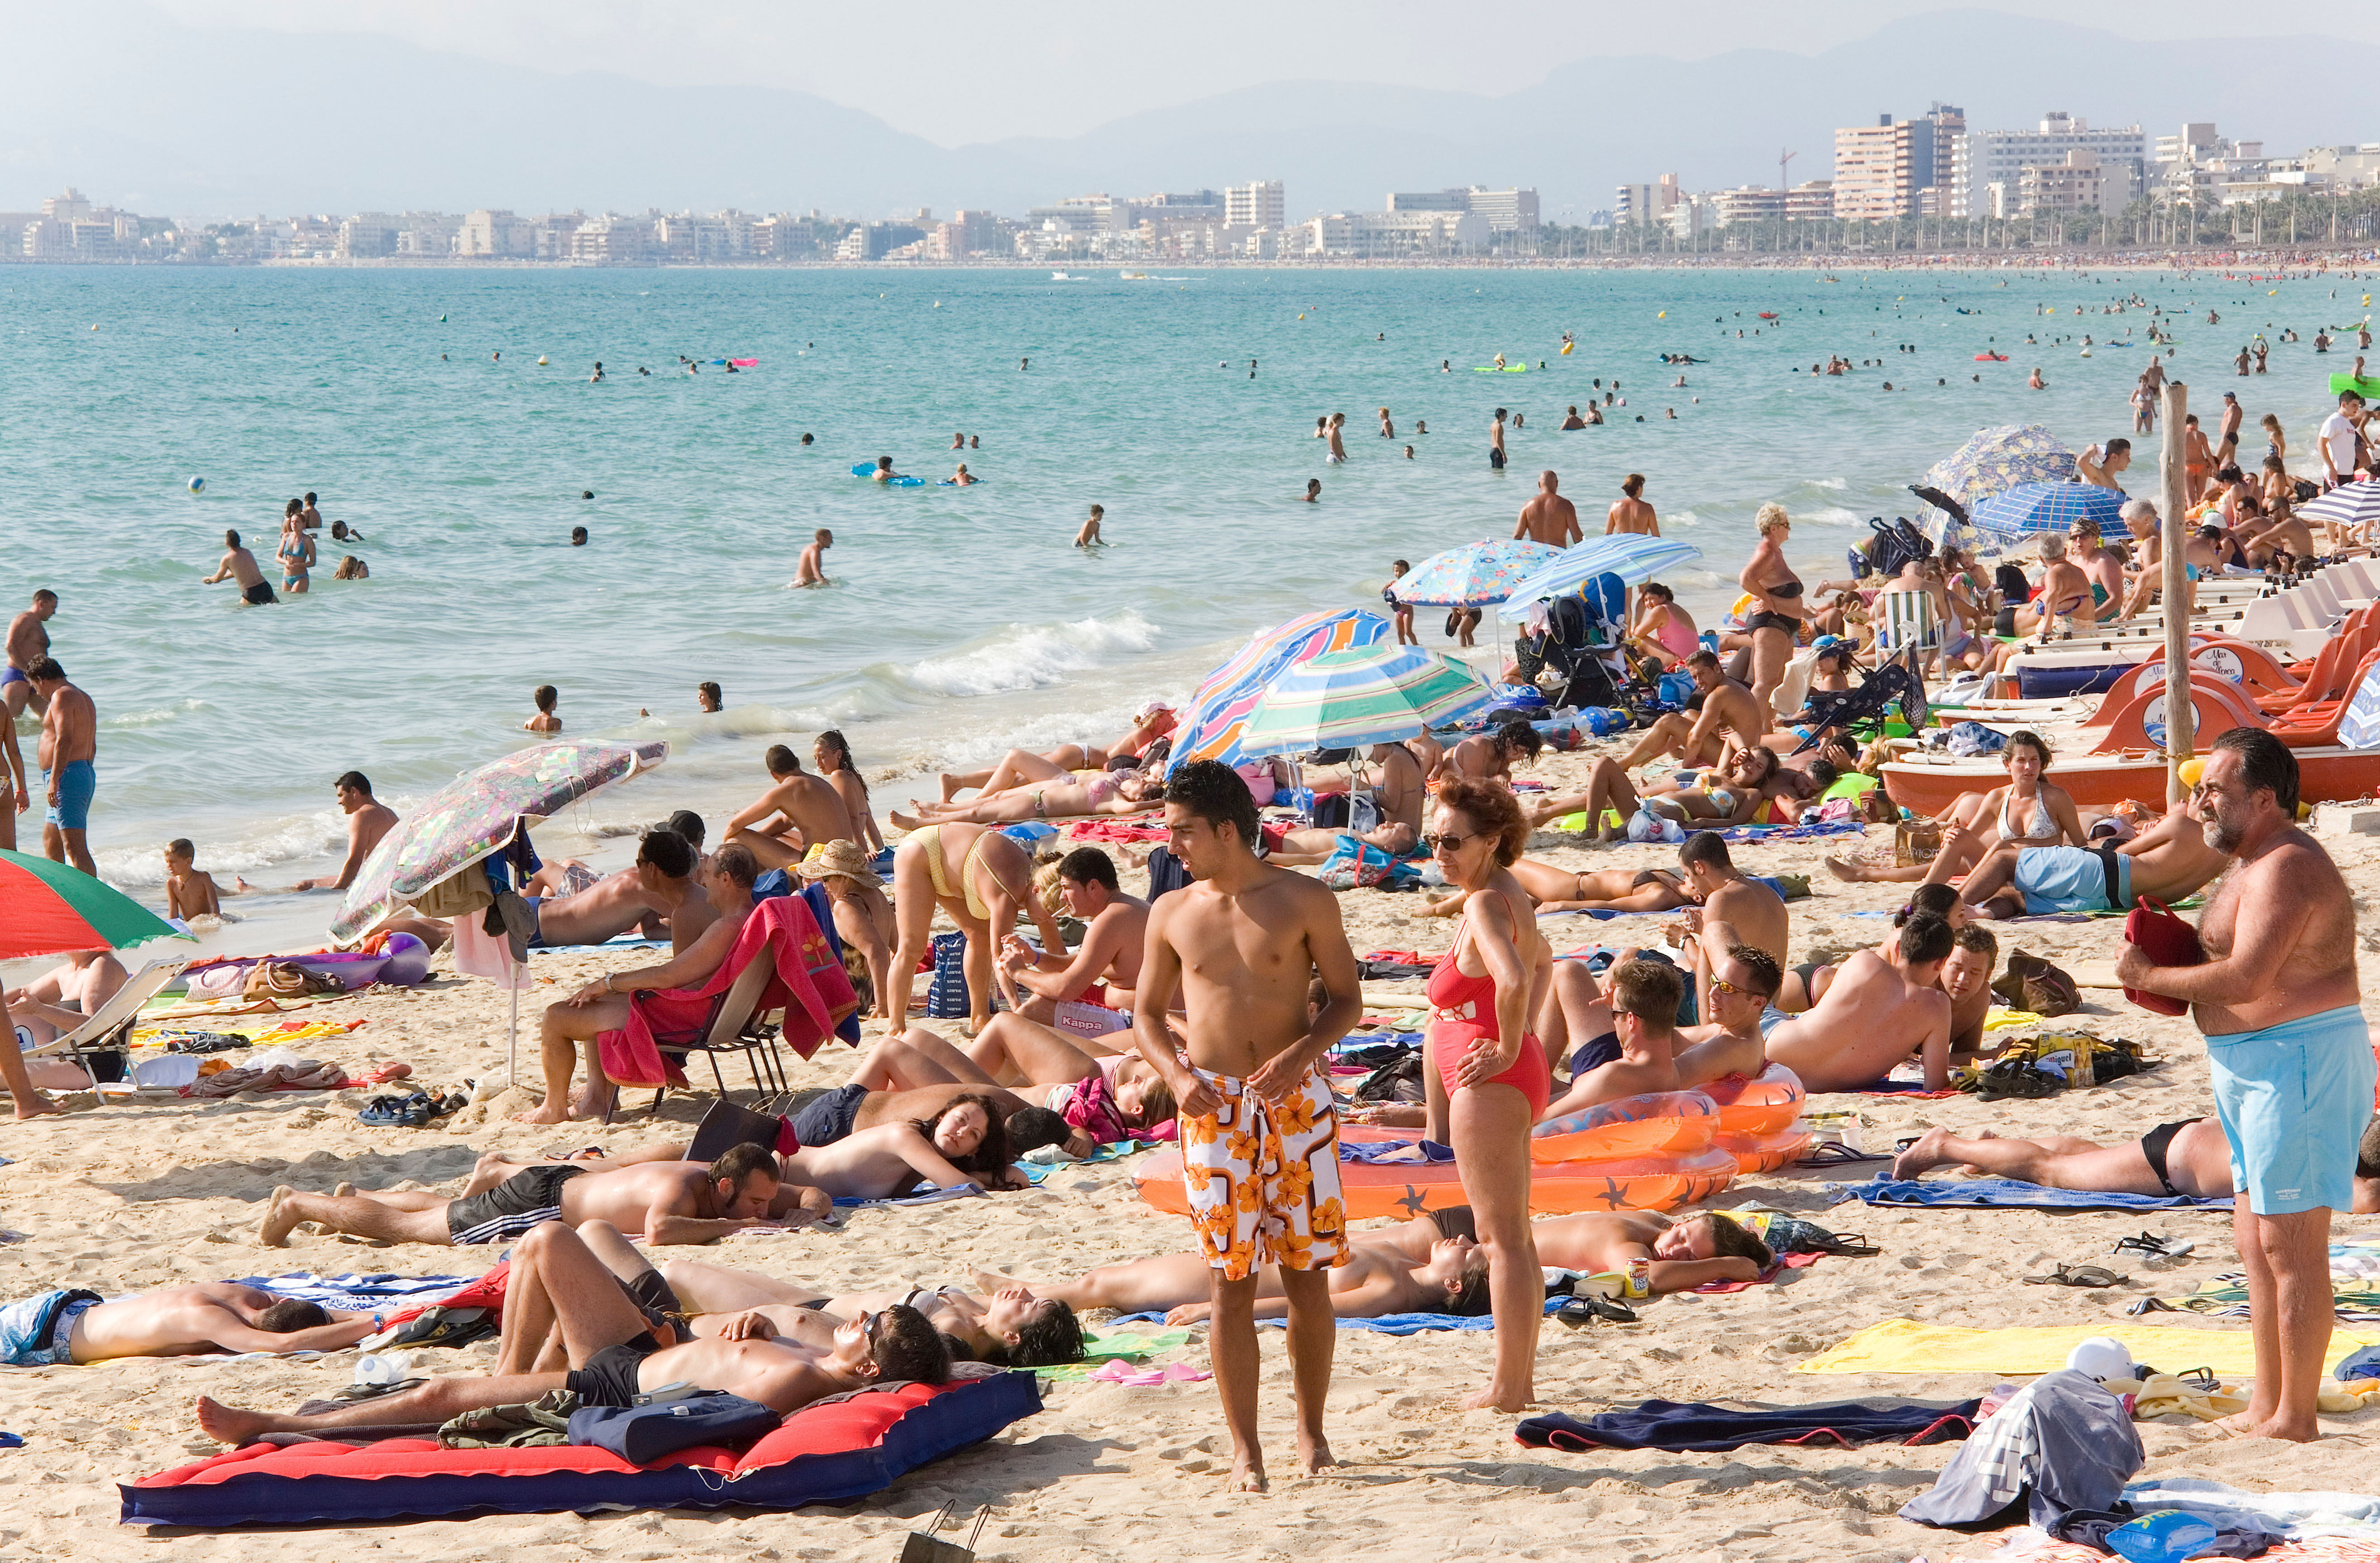 Der Strand in Playa de Palma auf Mallorca ist einer der größten Touristenorte in Spanien